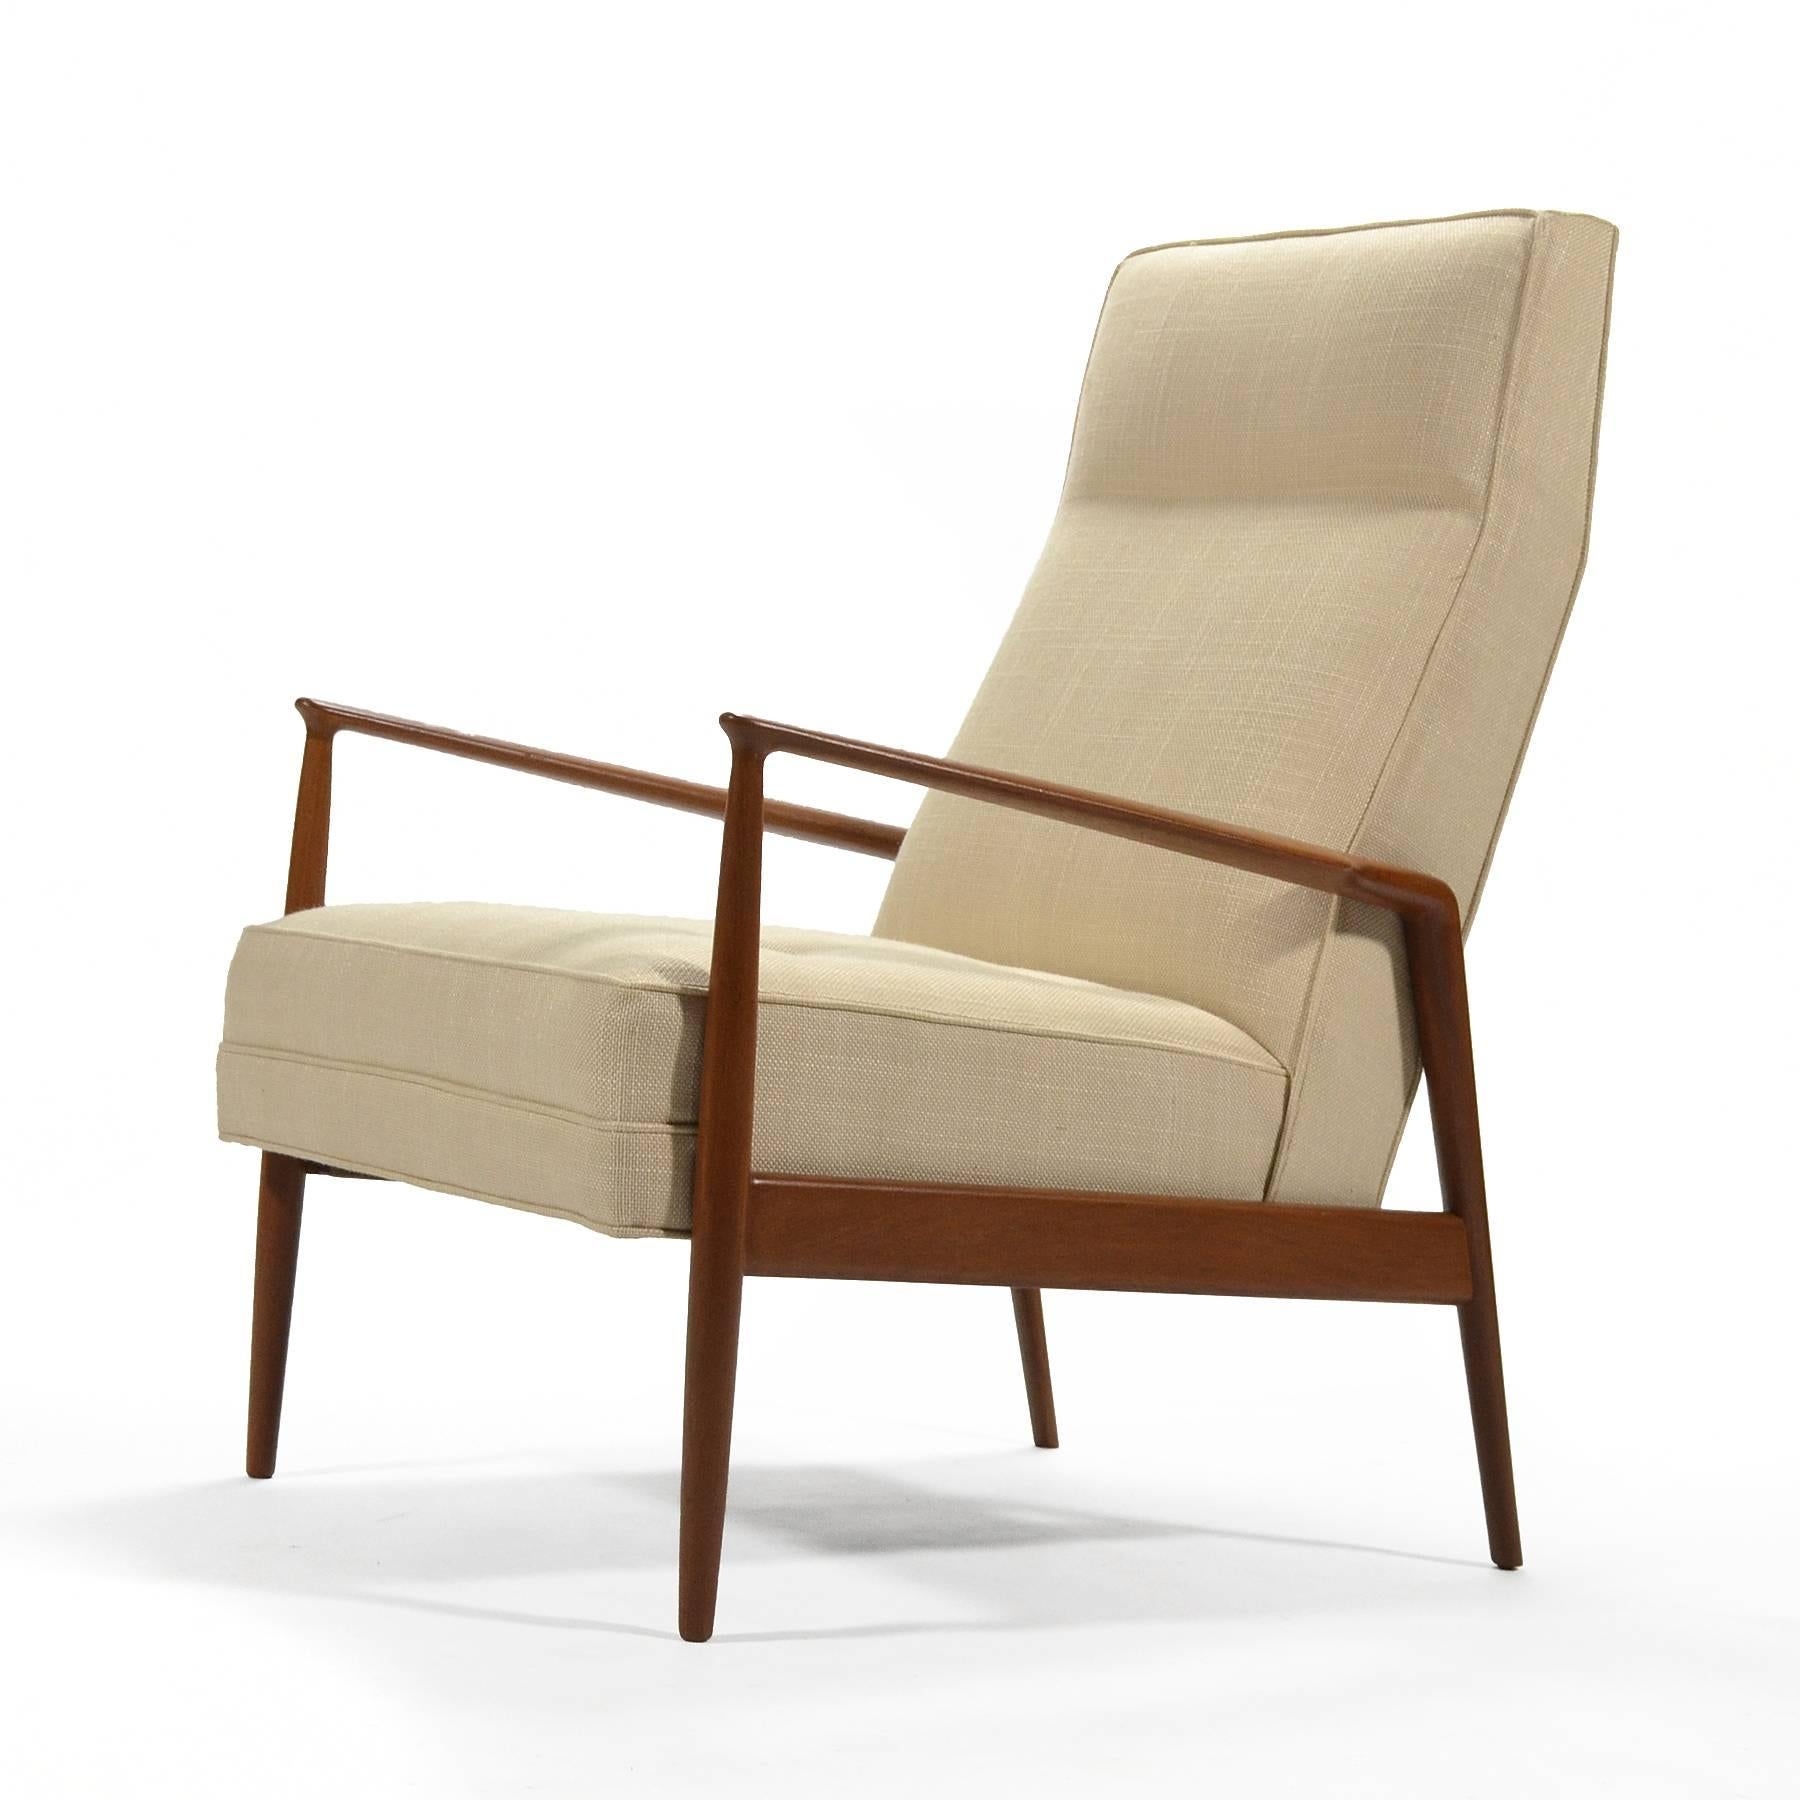 Ce magnifique et majestueux design de Kofod-Larsen est un classique de la modernité danoise. Le cadre en teck présente de merveilleux détails sculpturaux et supporte un siège rembourré. Nouvellement restaurée et retapissée, cette chaise longue est